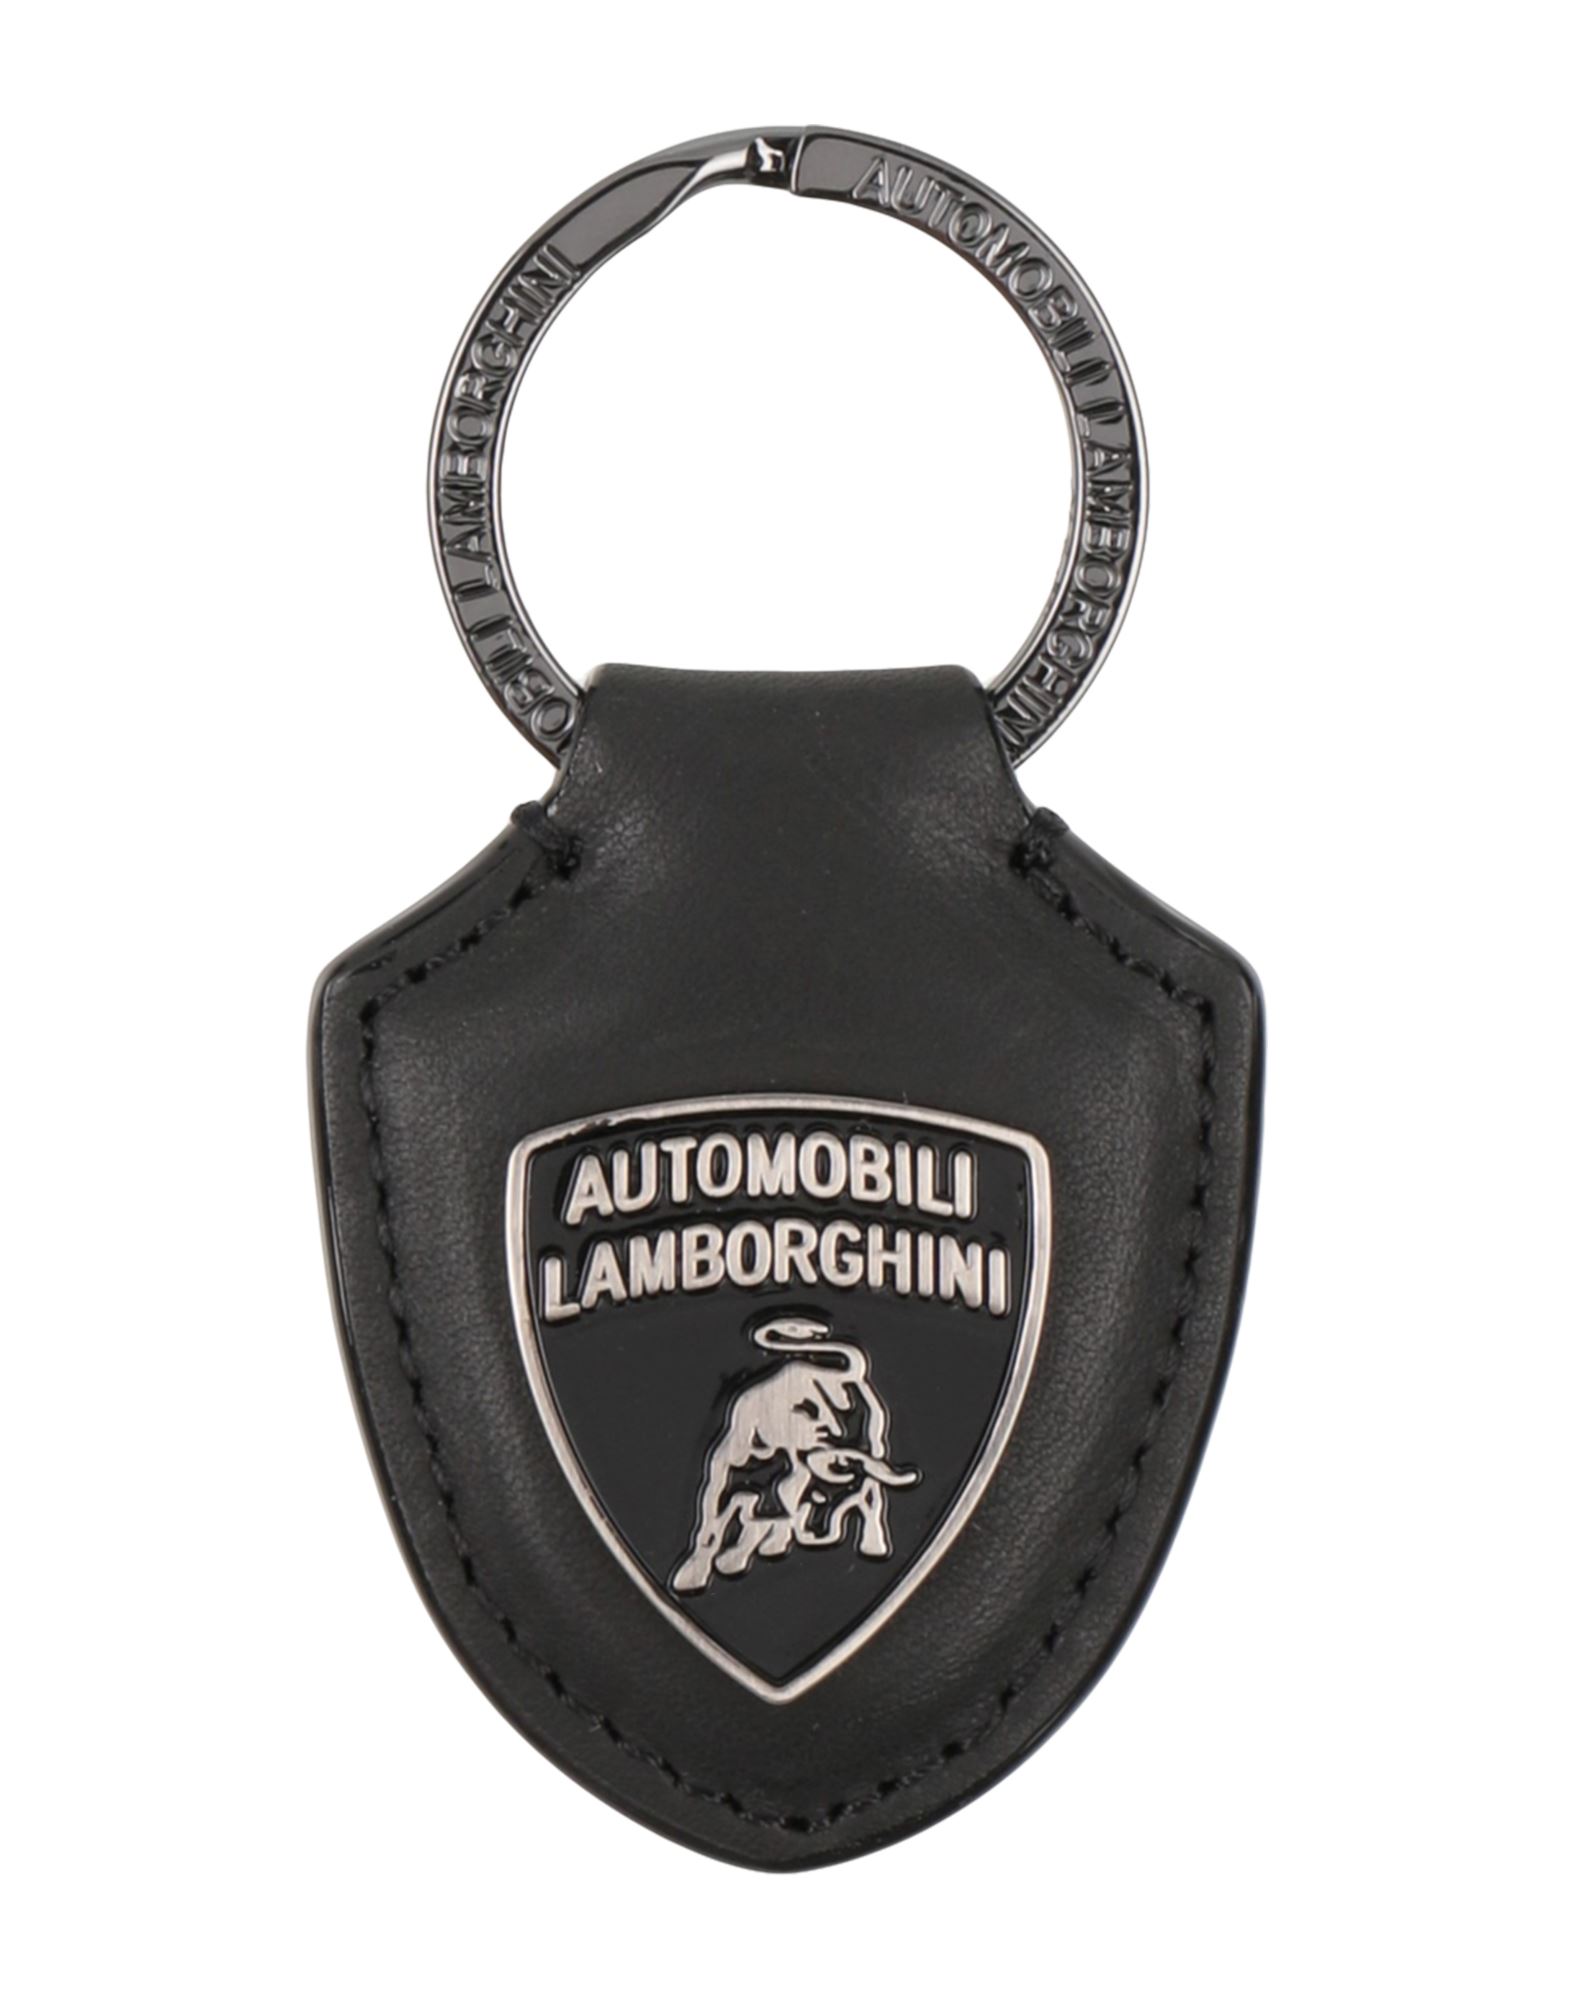 Automobili Lamborghini Key Rings In Black